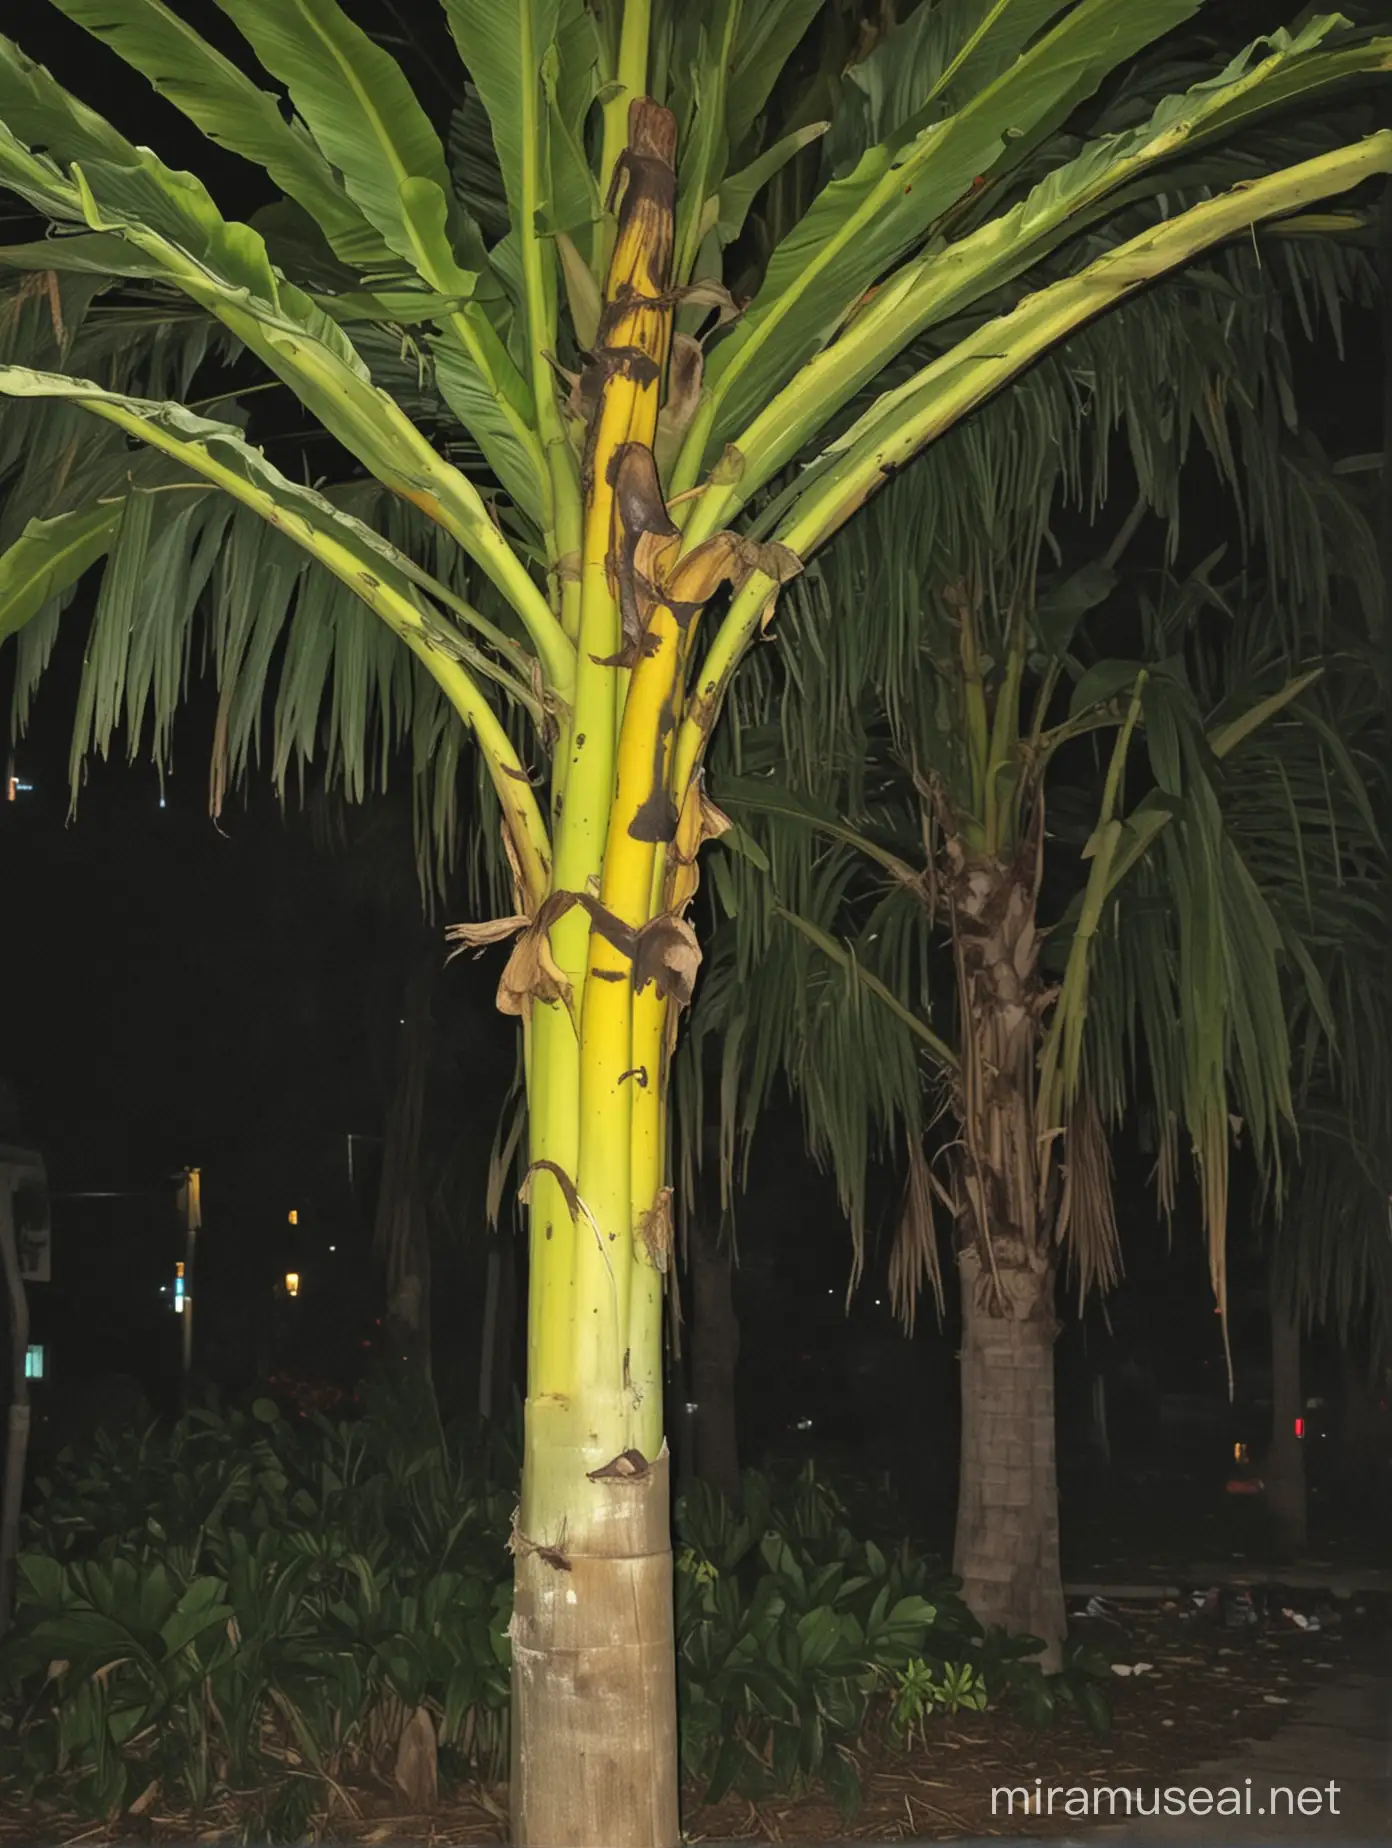 Fhoto at satnight, banana tree,scary